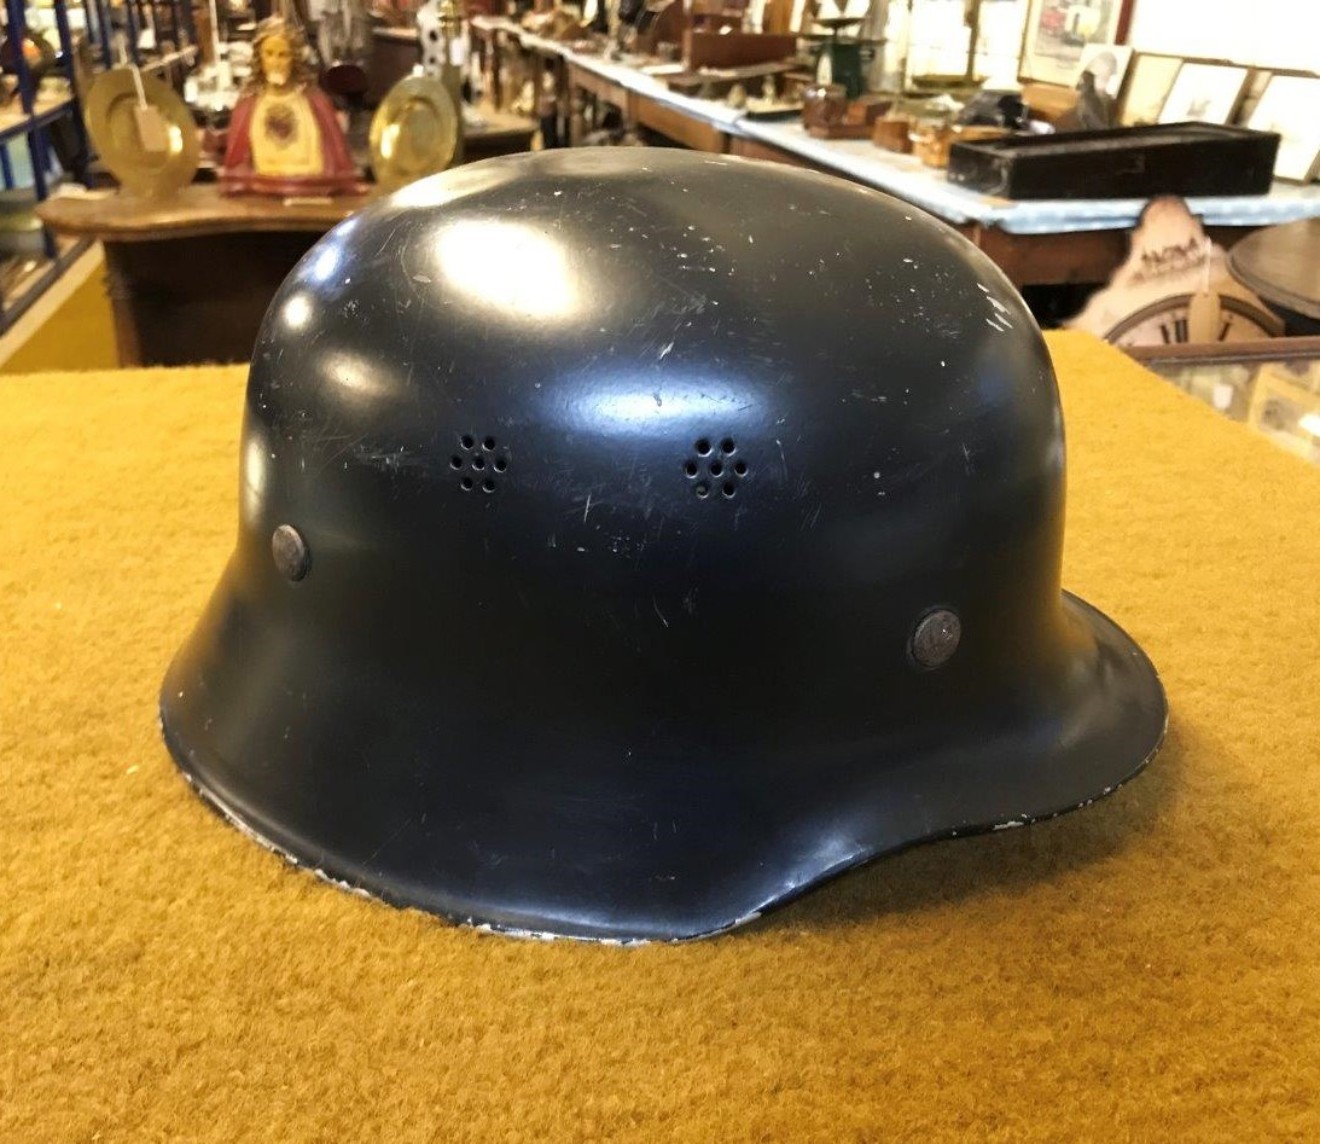 Vintage Ziegler M34 German Fireman's Helmet